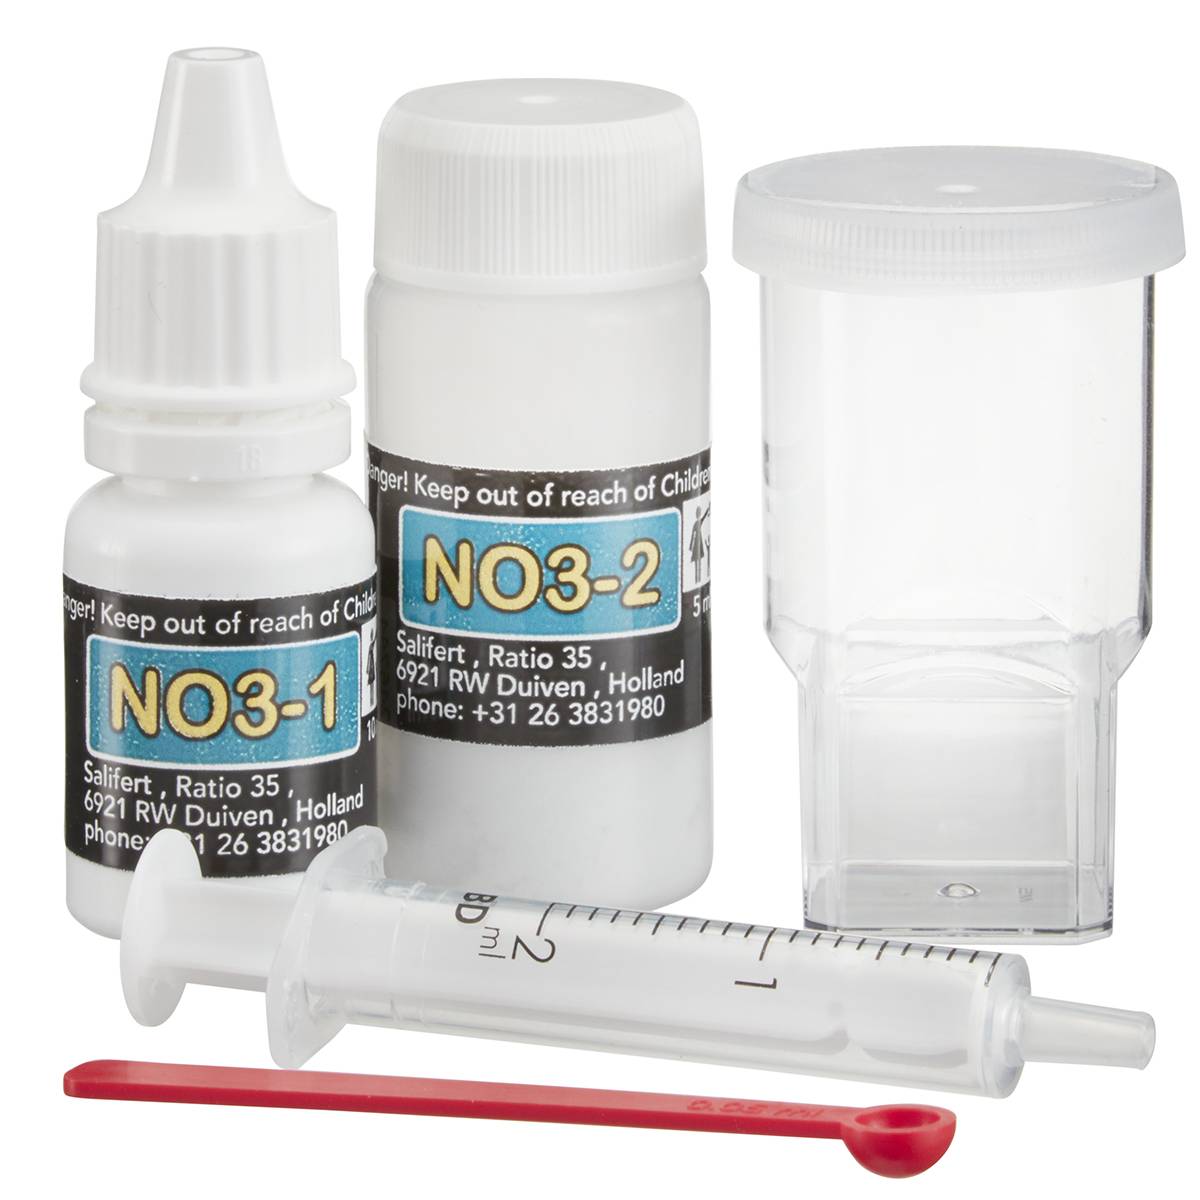 Nitrate Aquarium Test Kit - Salifert